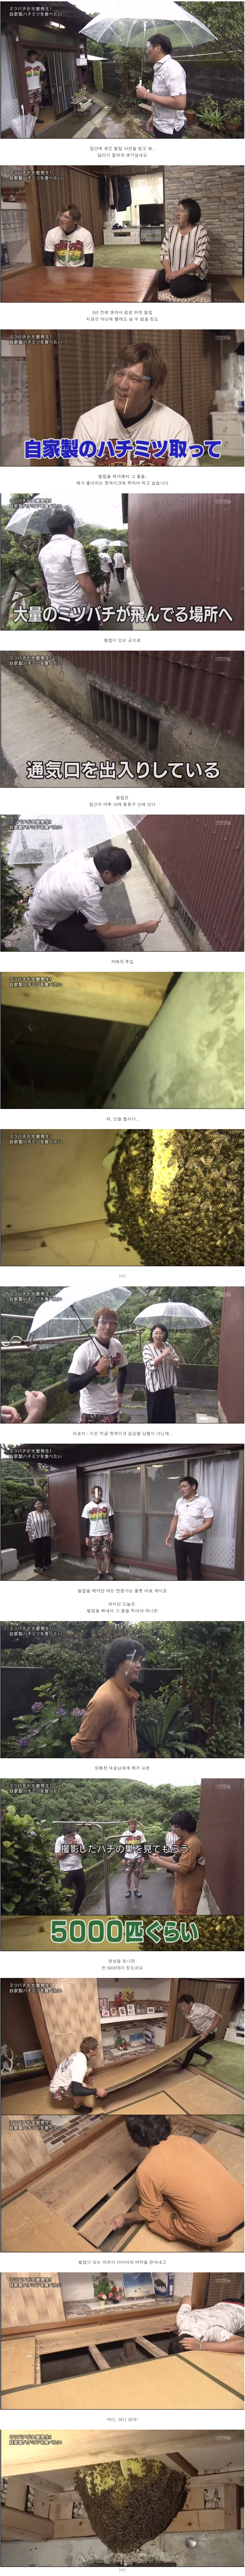 일본예능) 집안에 벌집이 생겼는데 꿀을 채취해서 먹어보고 싶어요!!.jpg